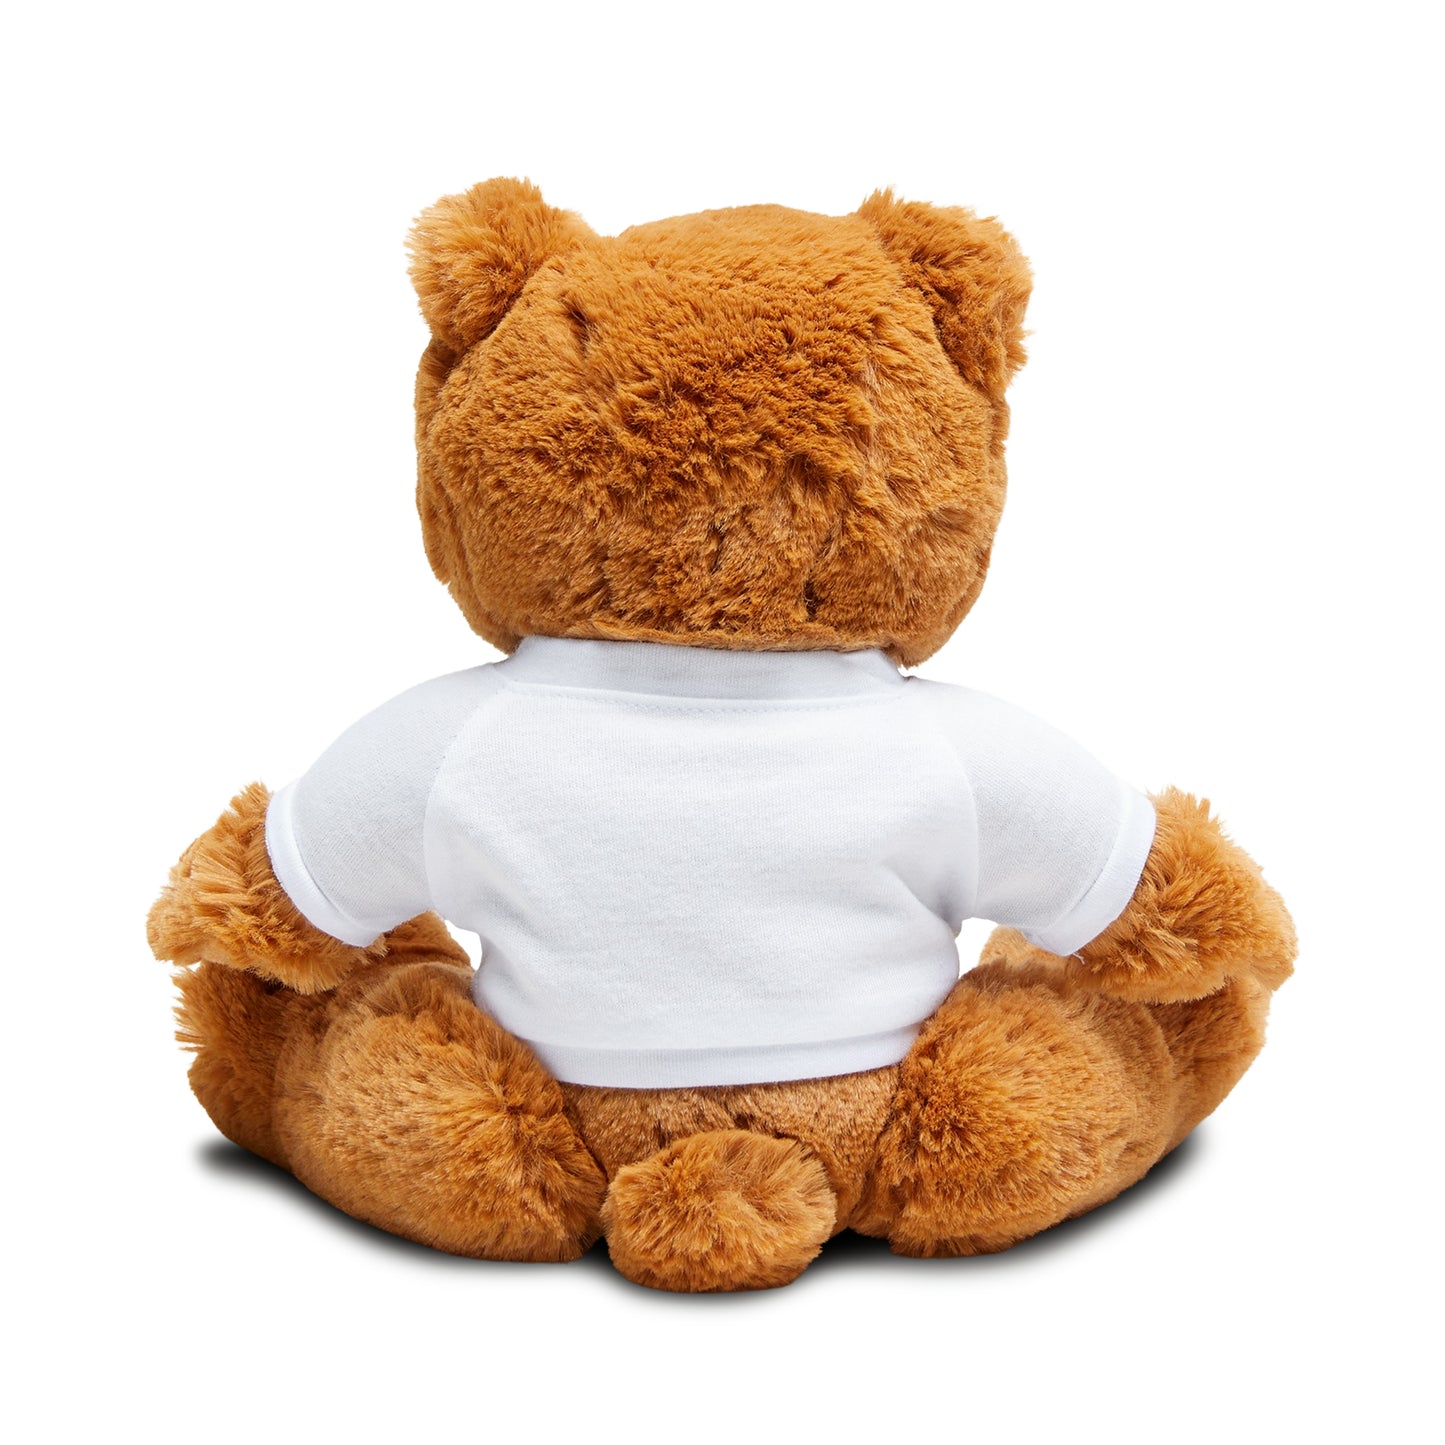 Resolutions - Teddy Bear